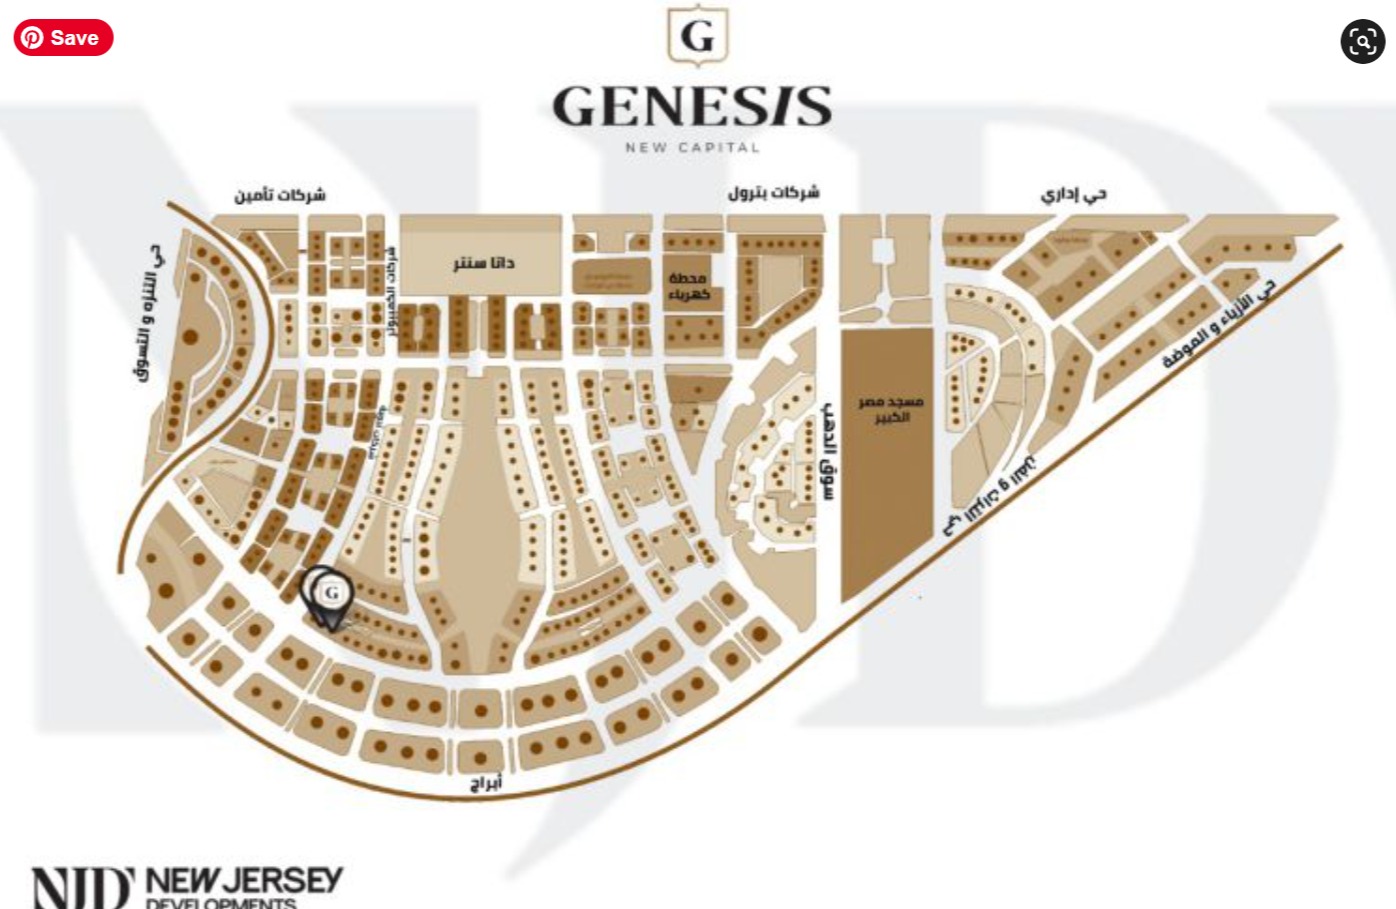 مول جينيسيس تاور العاصمة الإدارية الجديدة نيو جيرسي – Genesis Tower New Capital